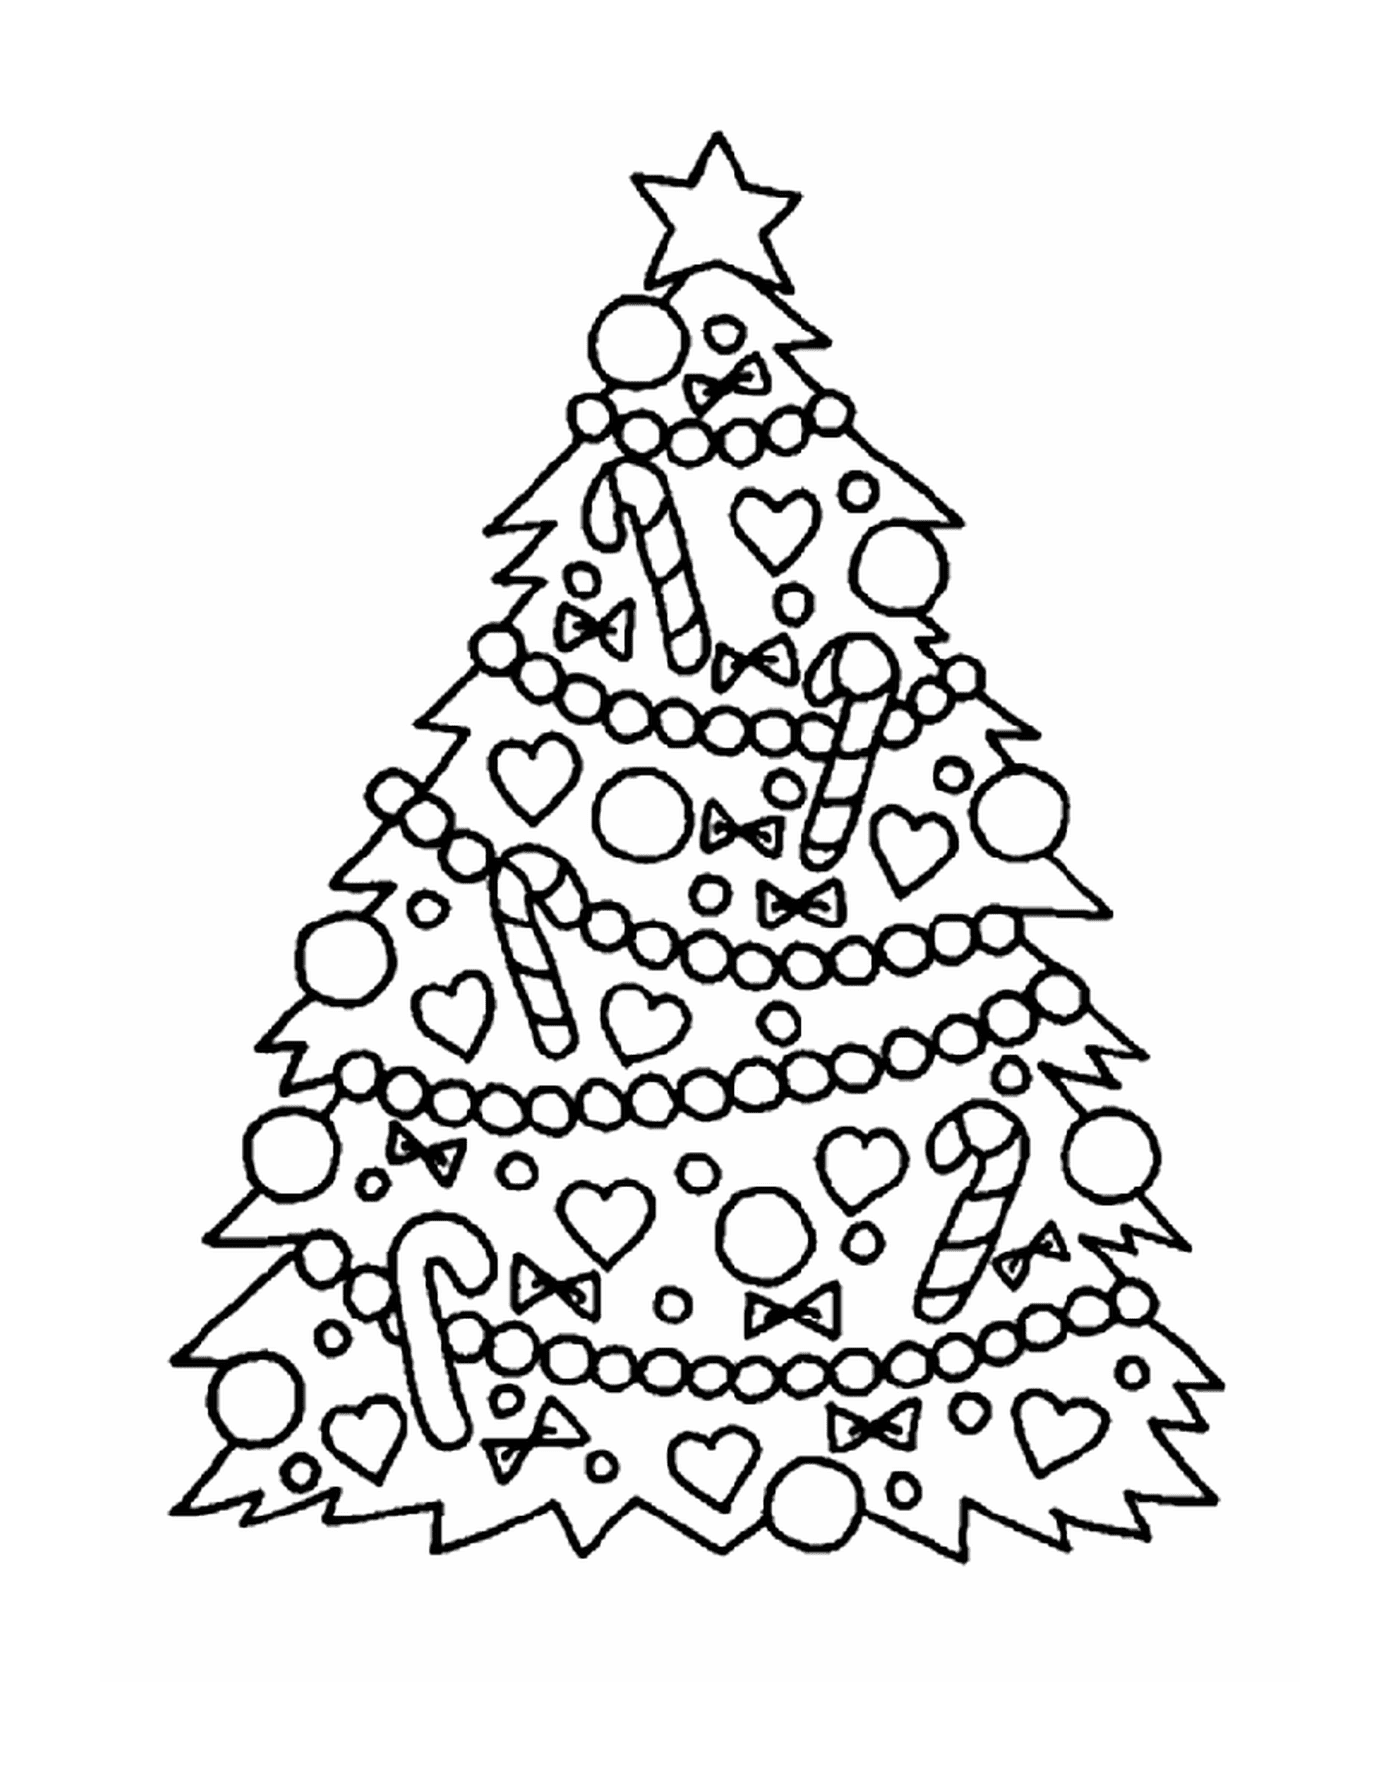  Uma árvore de Natal decorada com doces e corações 